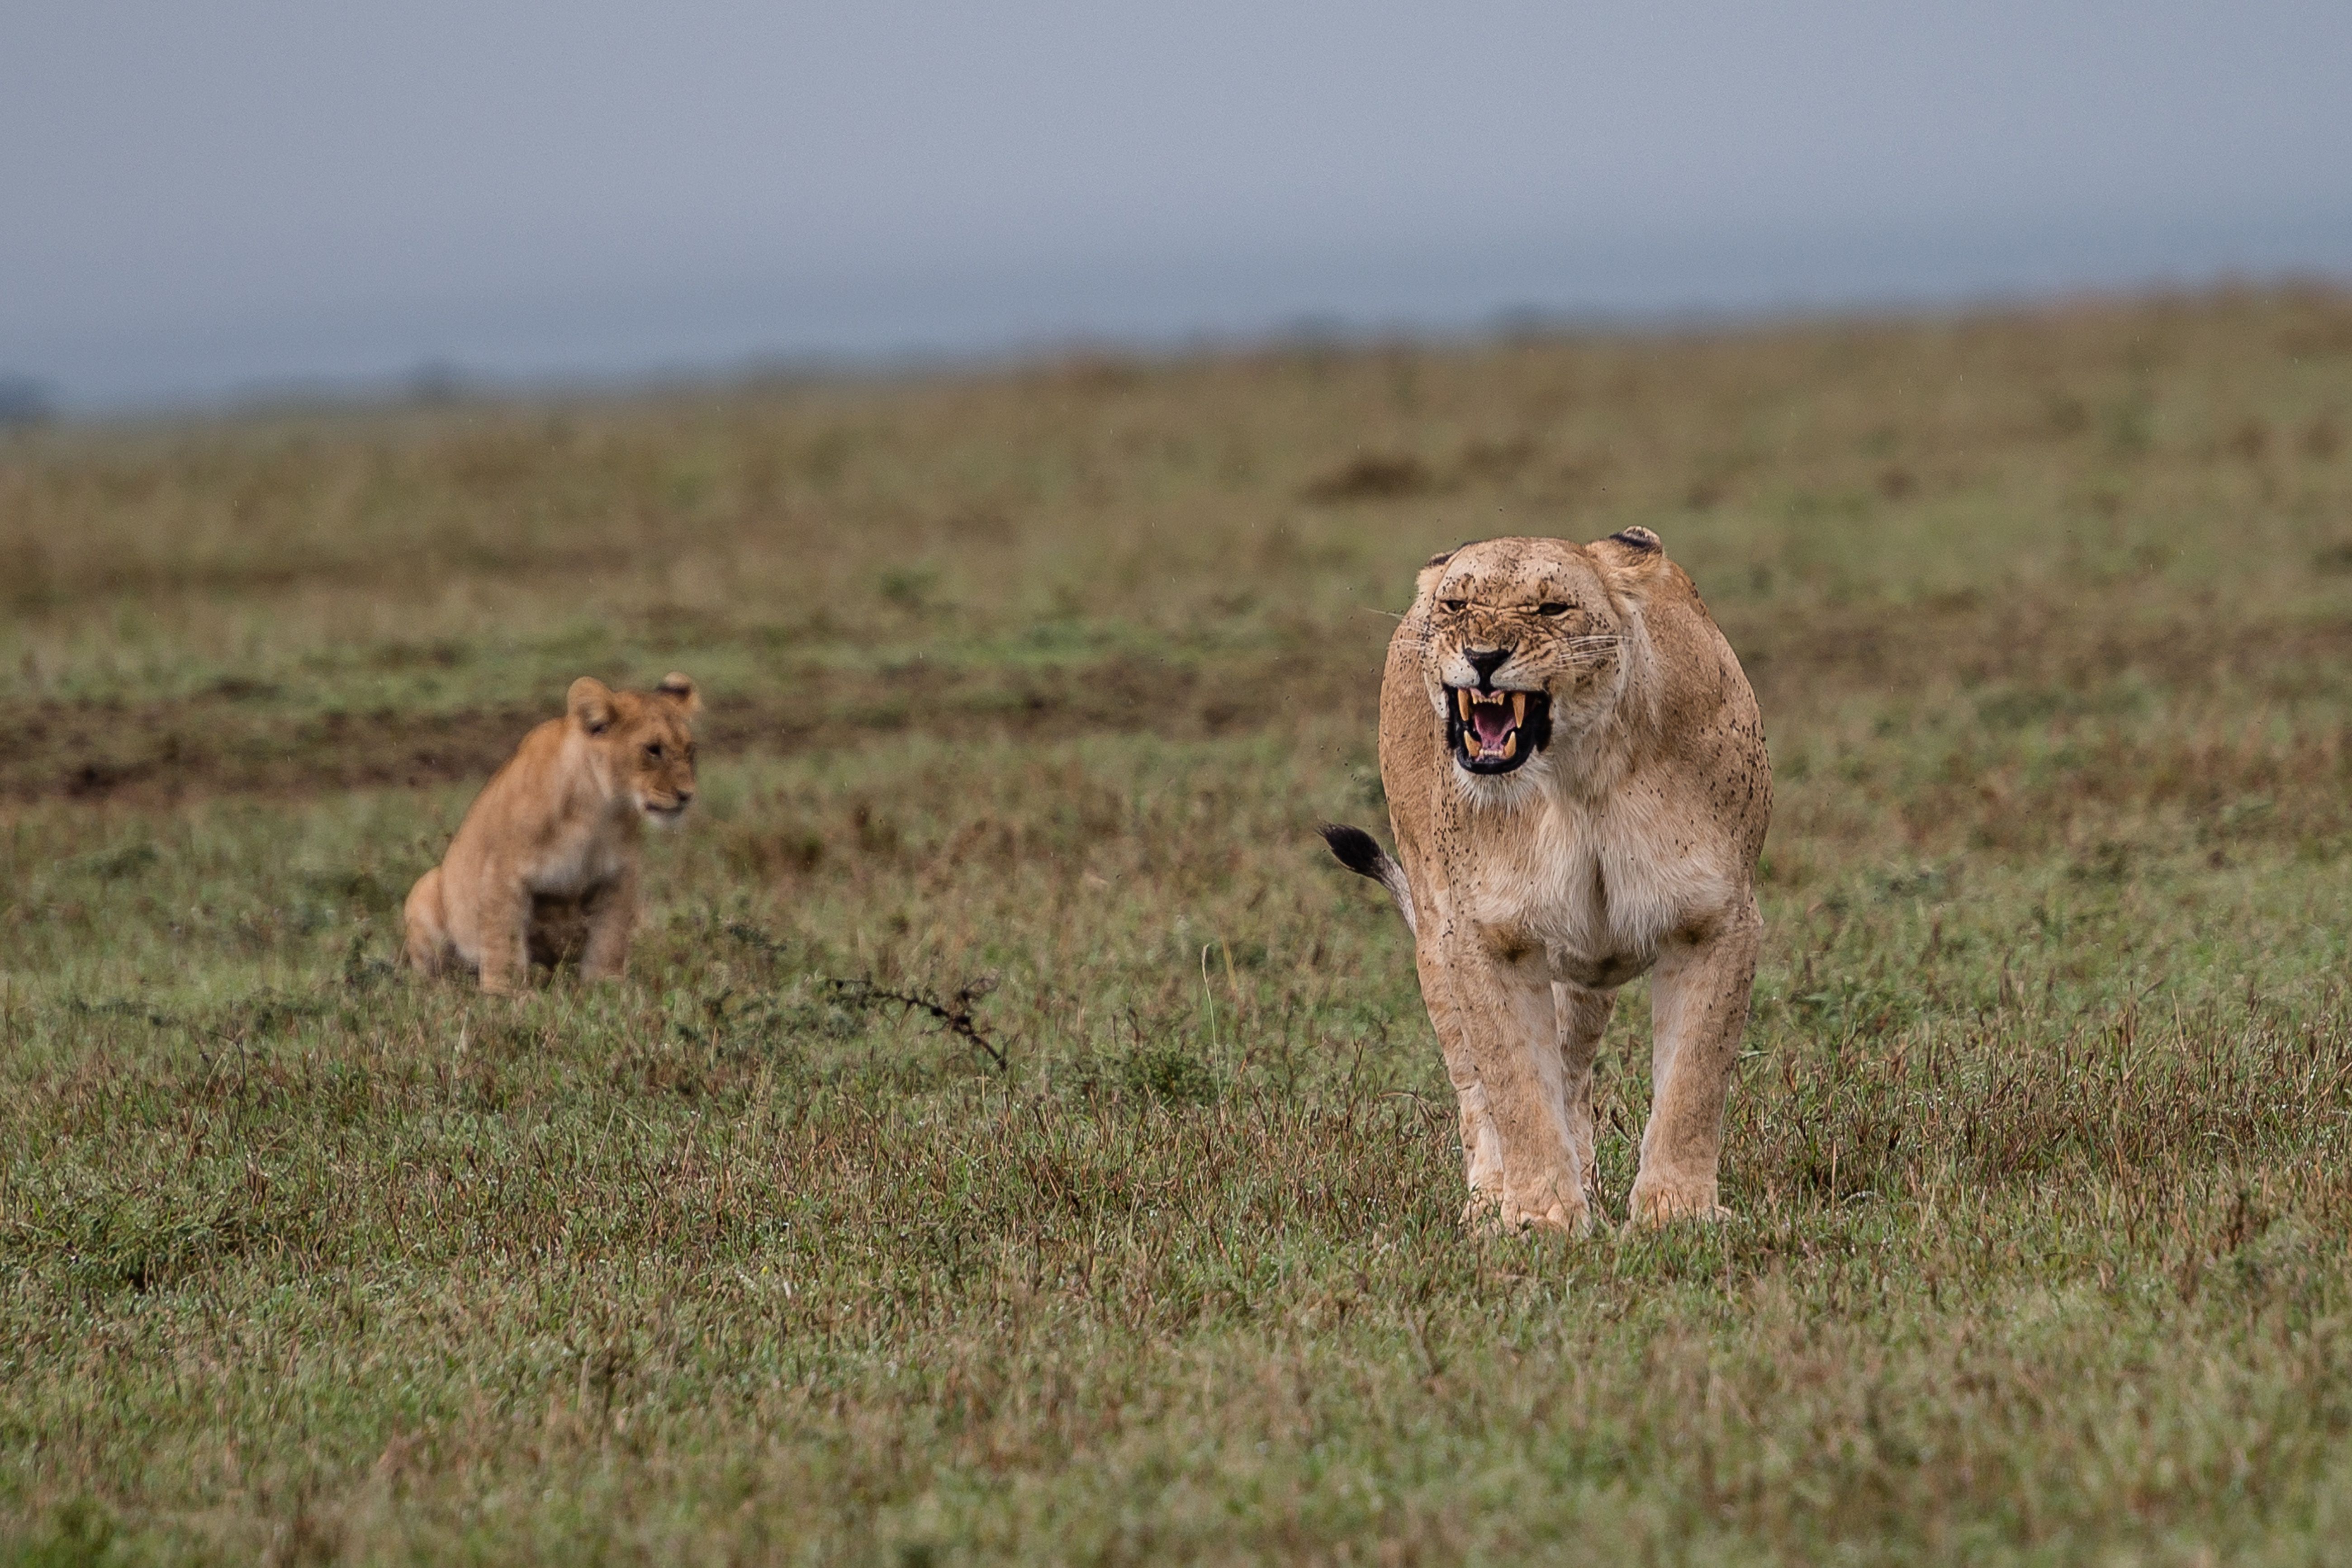 保护区内栖息的野生动物超过600种,包括著名的非洲五